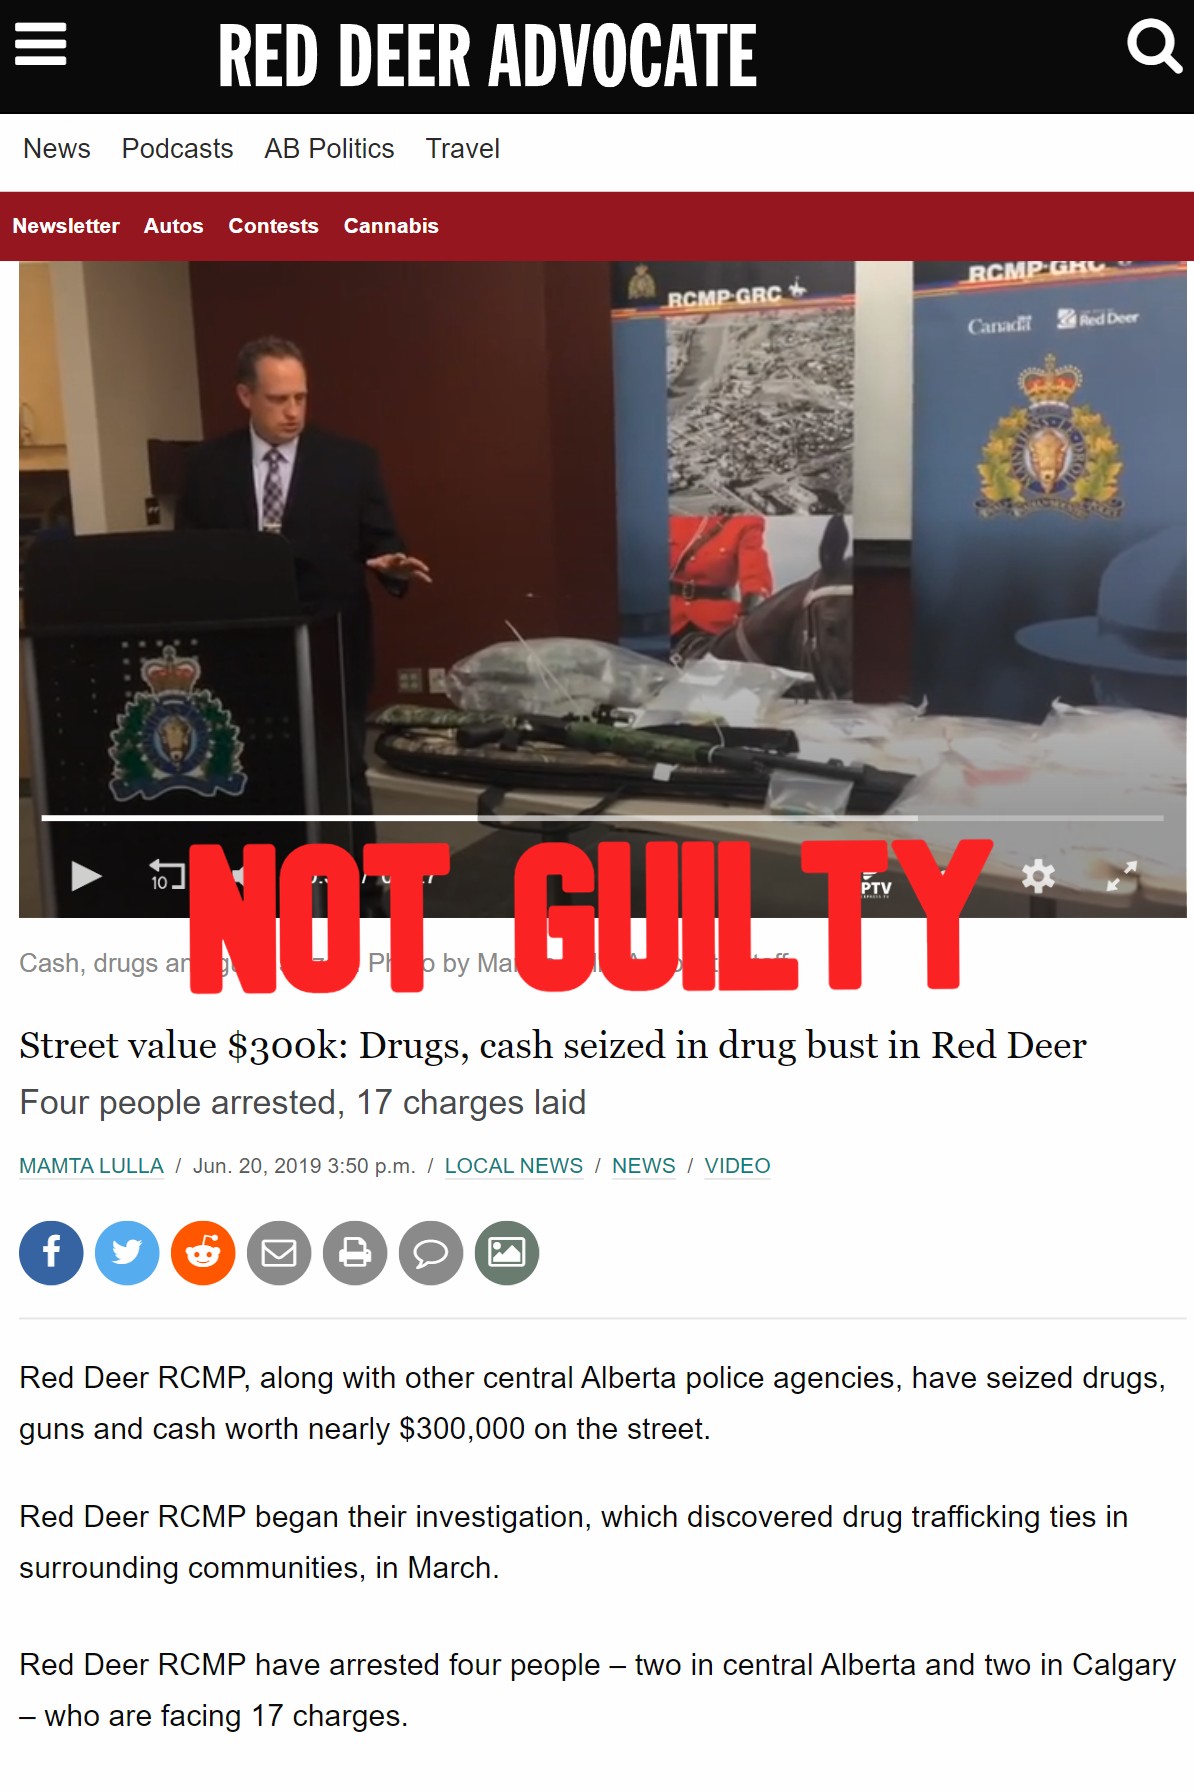 Street value $300k: Drugs, cash seized in drug bust in Red Deer